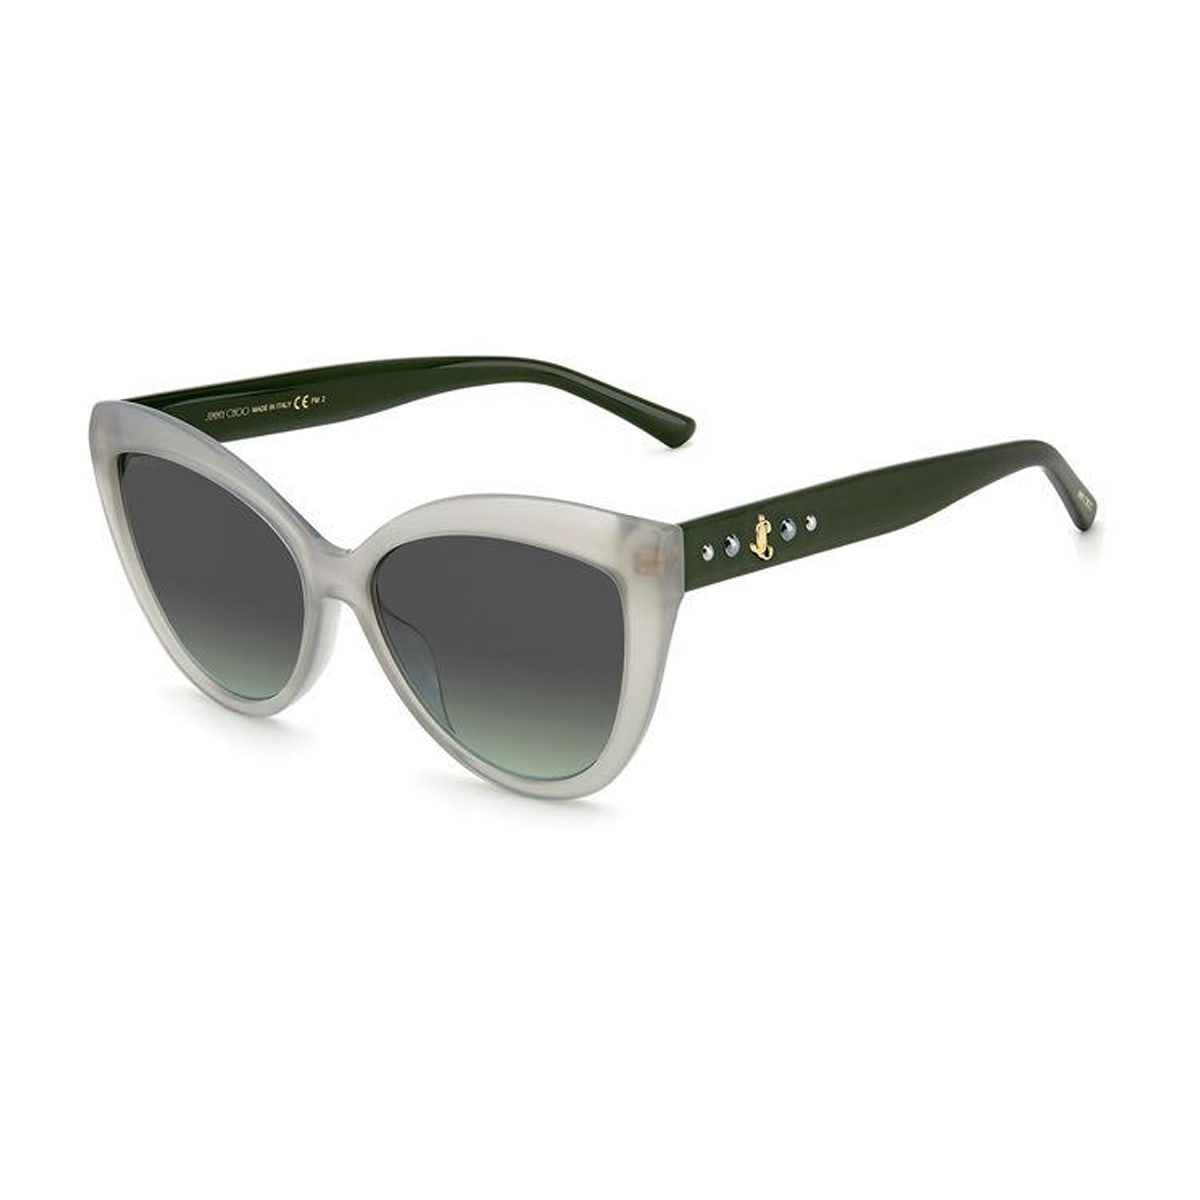 Jimmy Choo Eyewear Sinnie/g/s Sunglasses